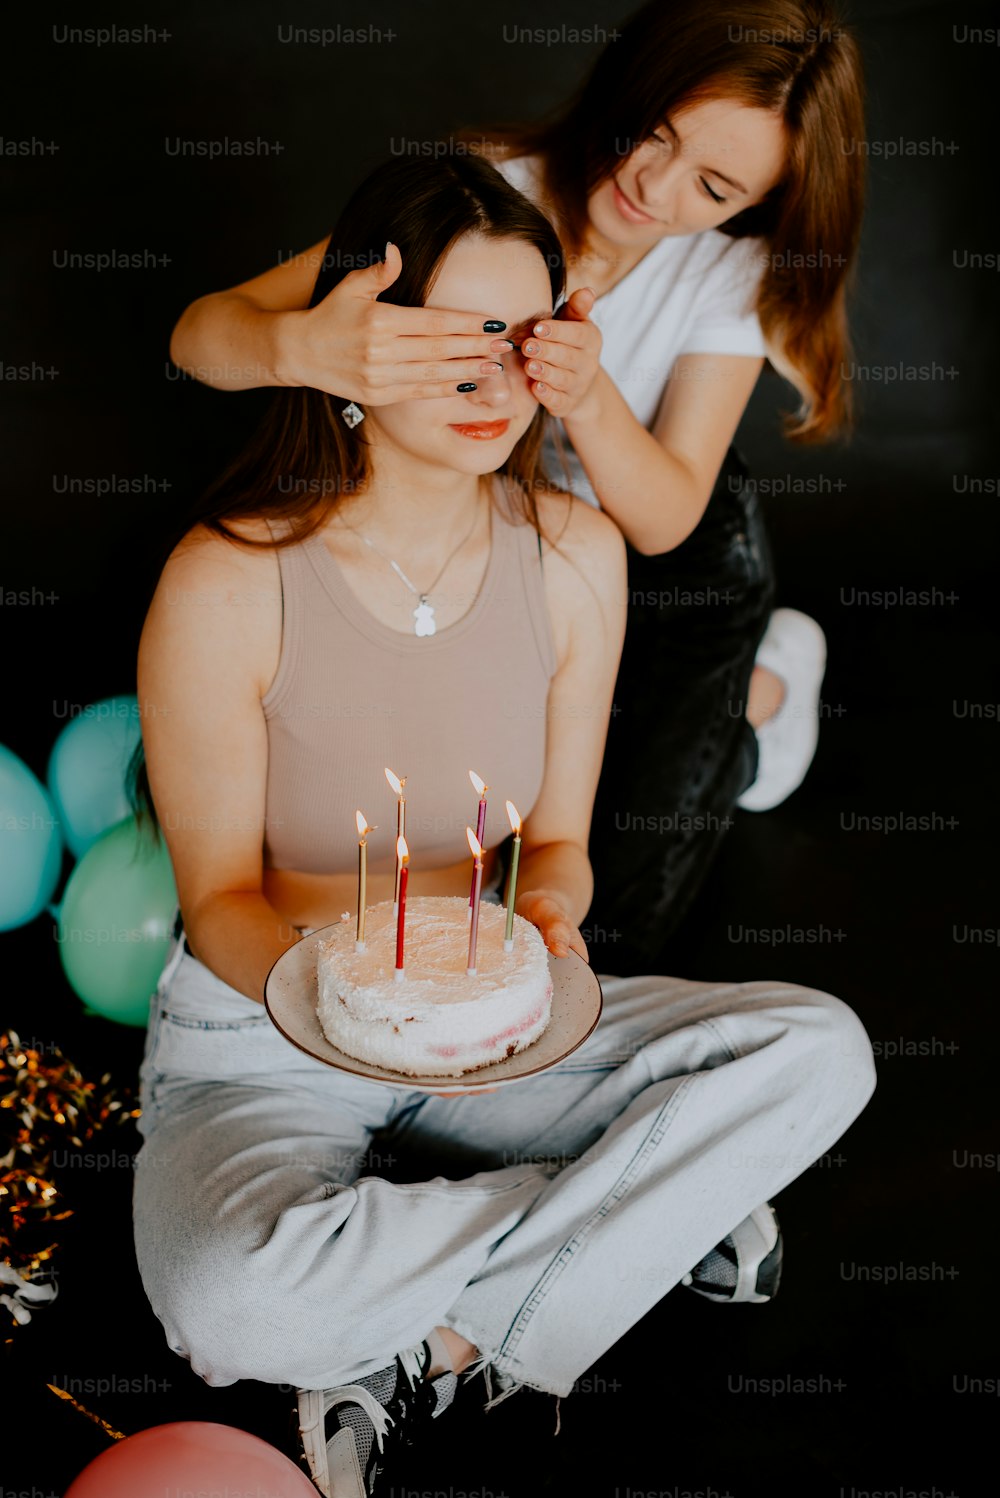 Eine Frau sitzt vor einem Kuchen mit Kerzen darauf